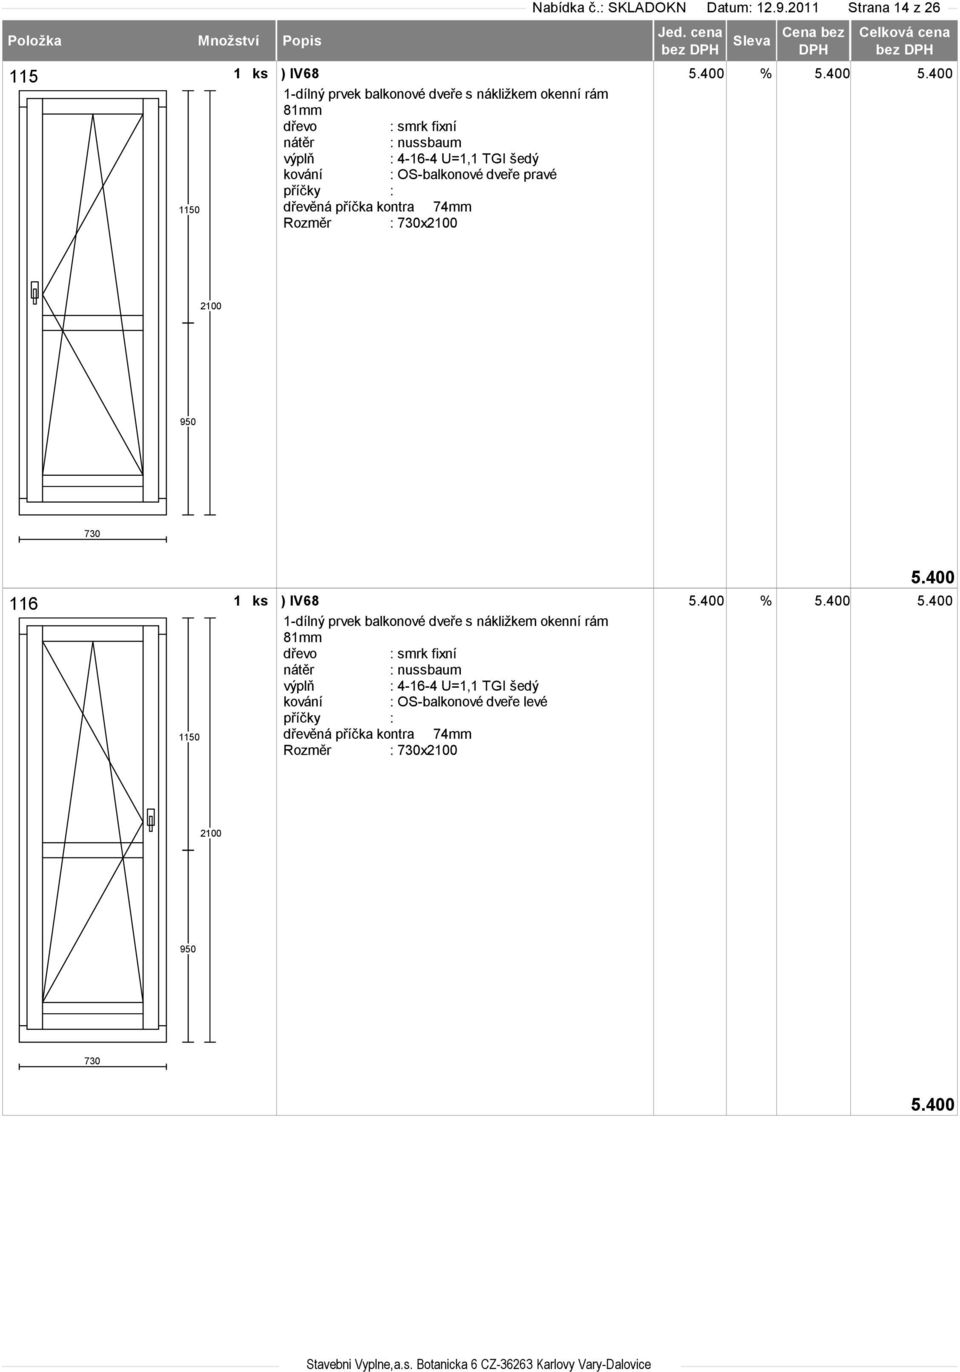 OS-balkonové dveře pravé dřevěná příčka kontra 74mm Rozměr : 730x2100 5.400 2100 950 730 116 1150 5.400 % 5.